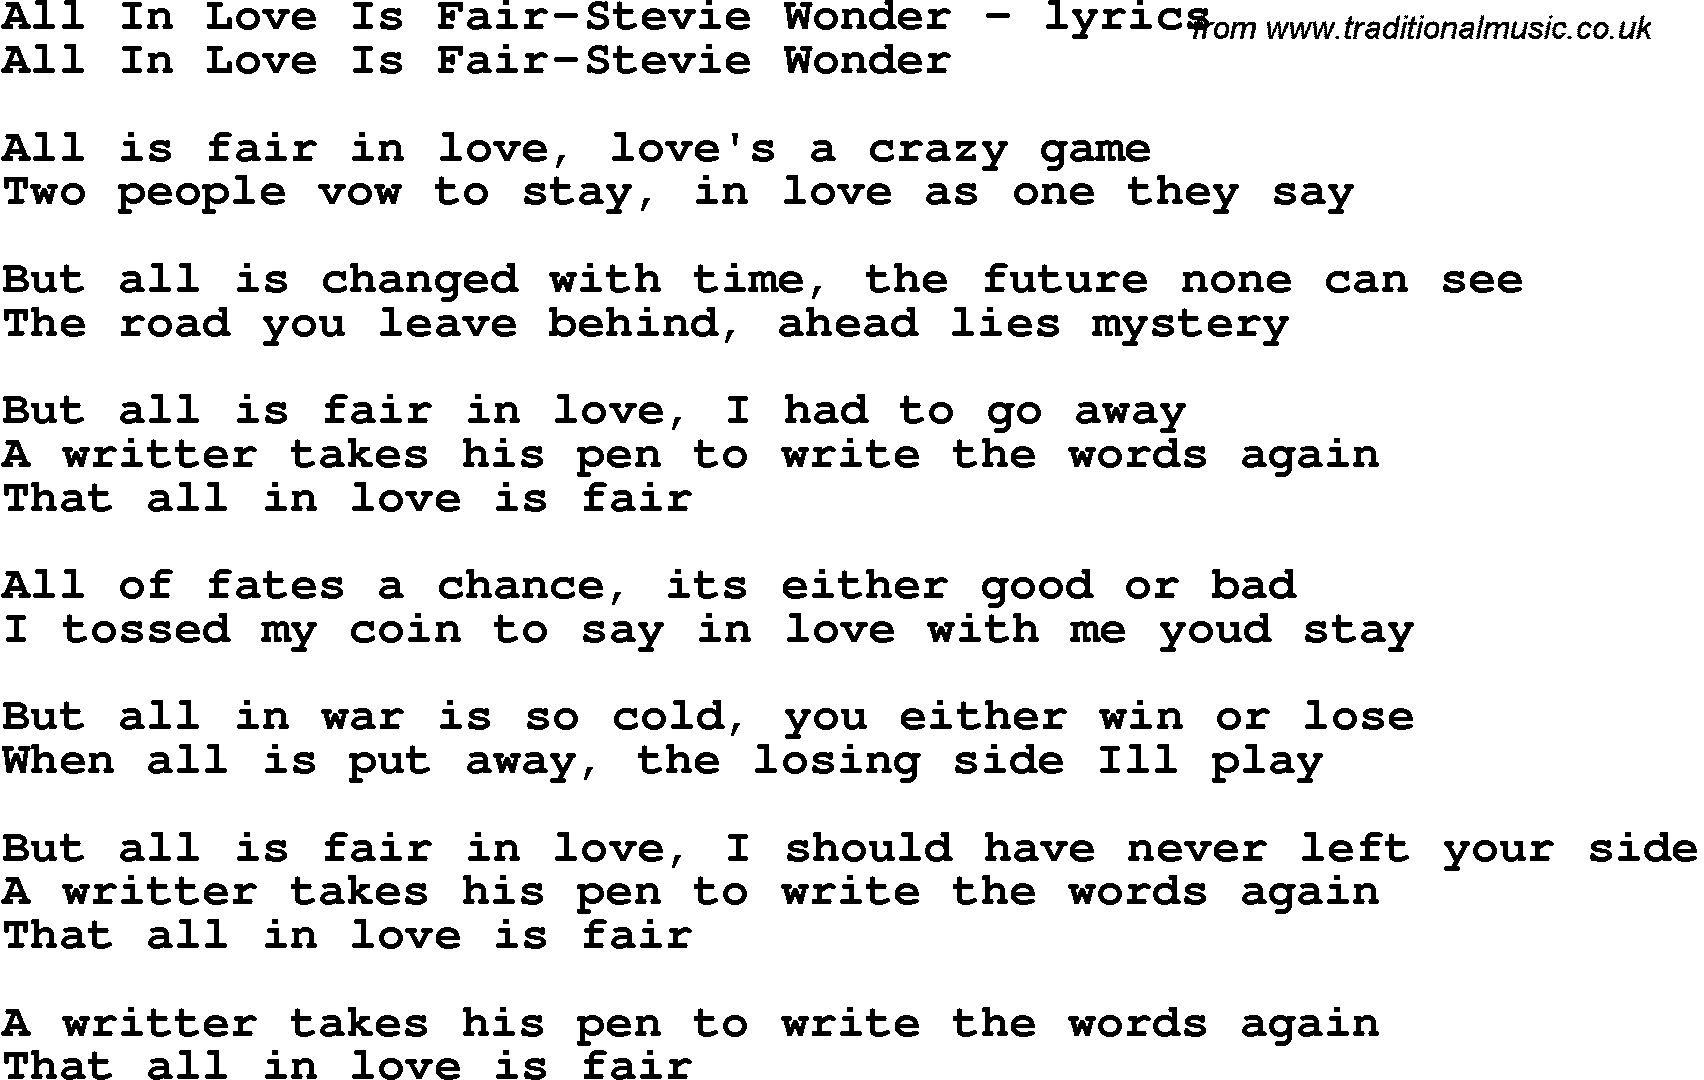 Love Song Lyrics for: All In Love Is Fair-Stevie Wonder